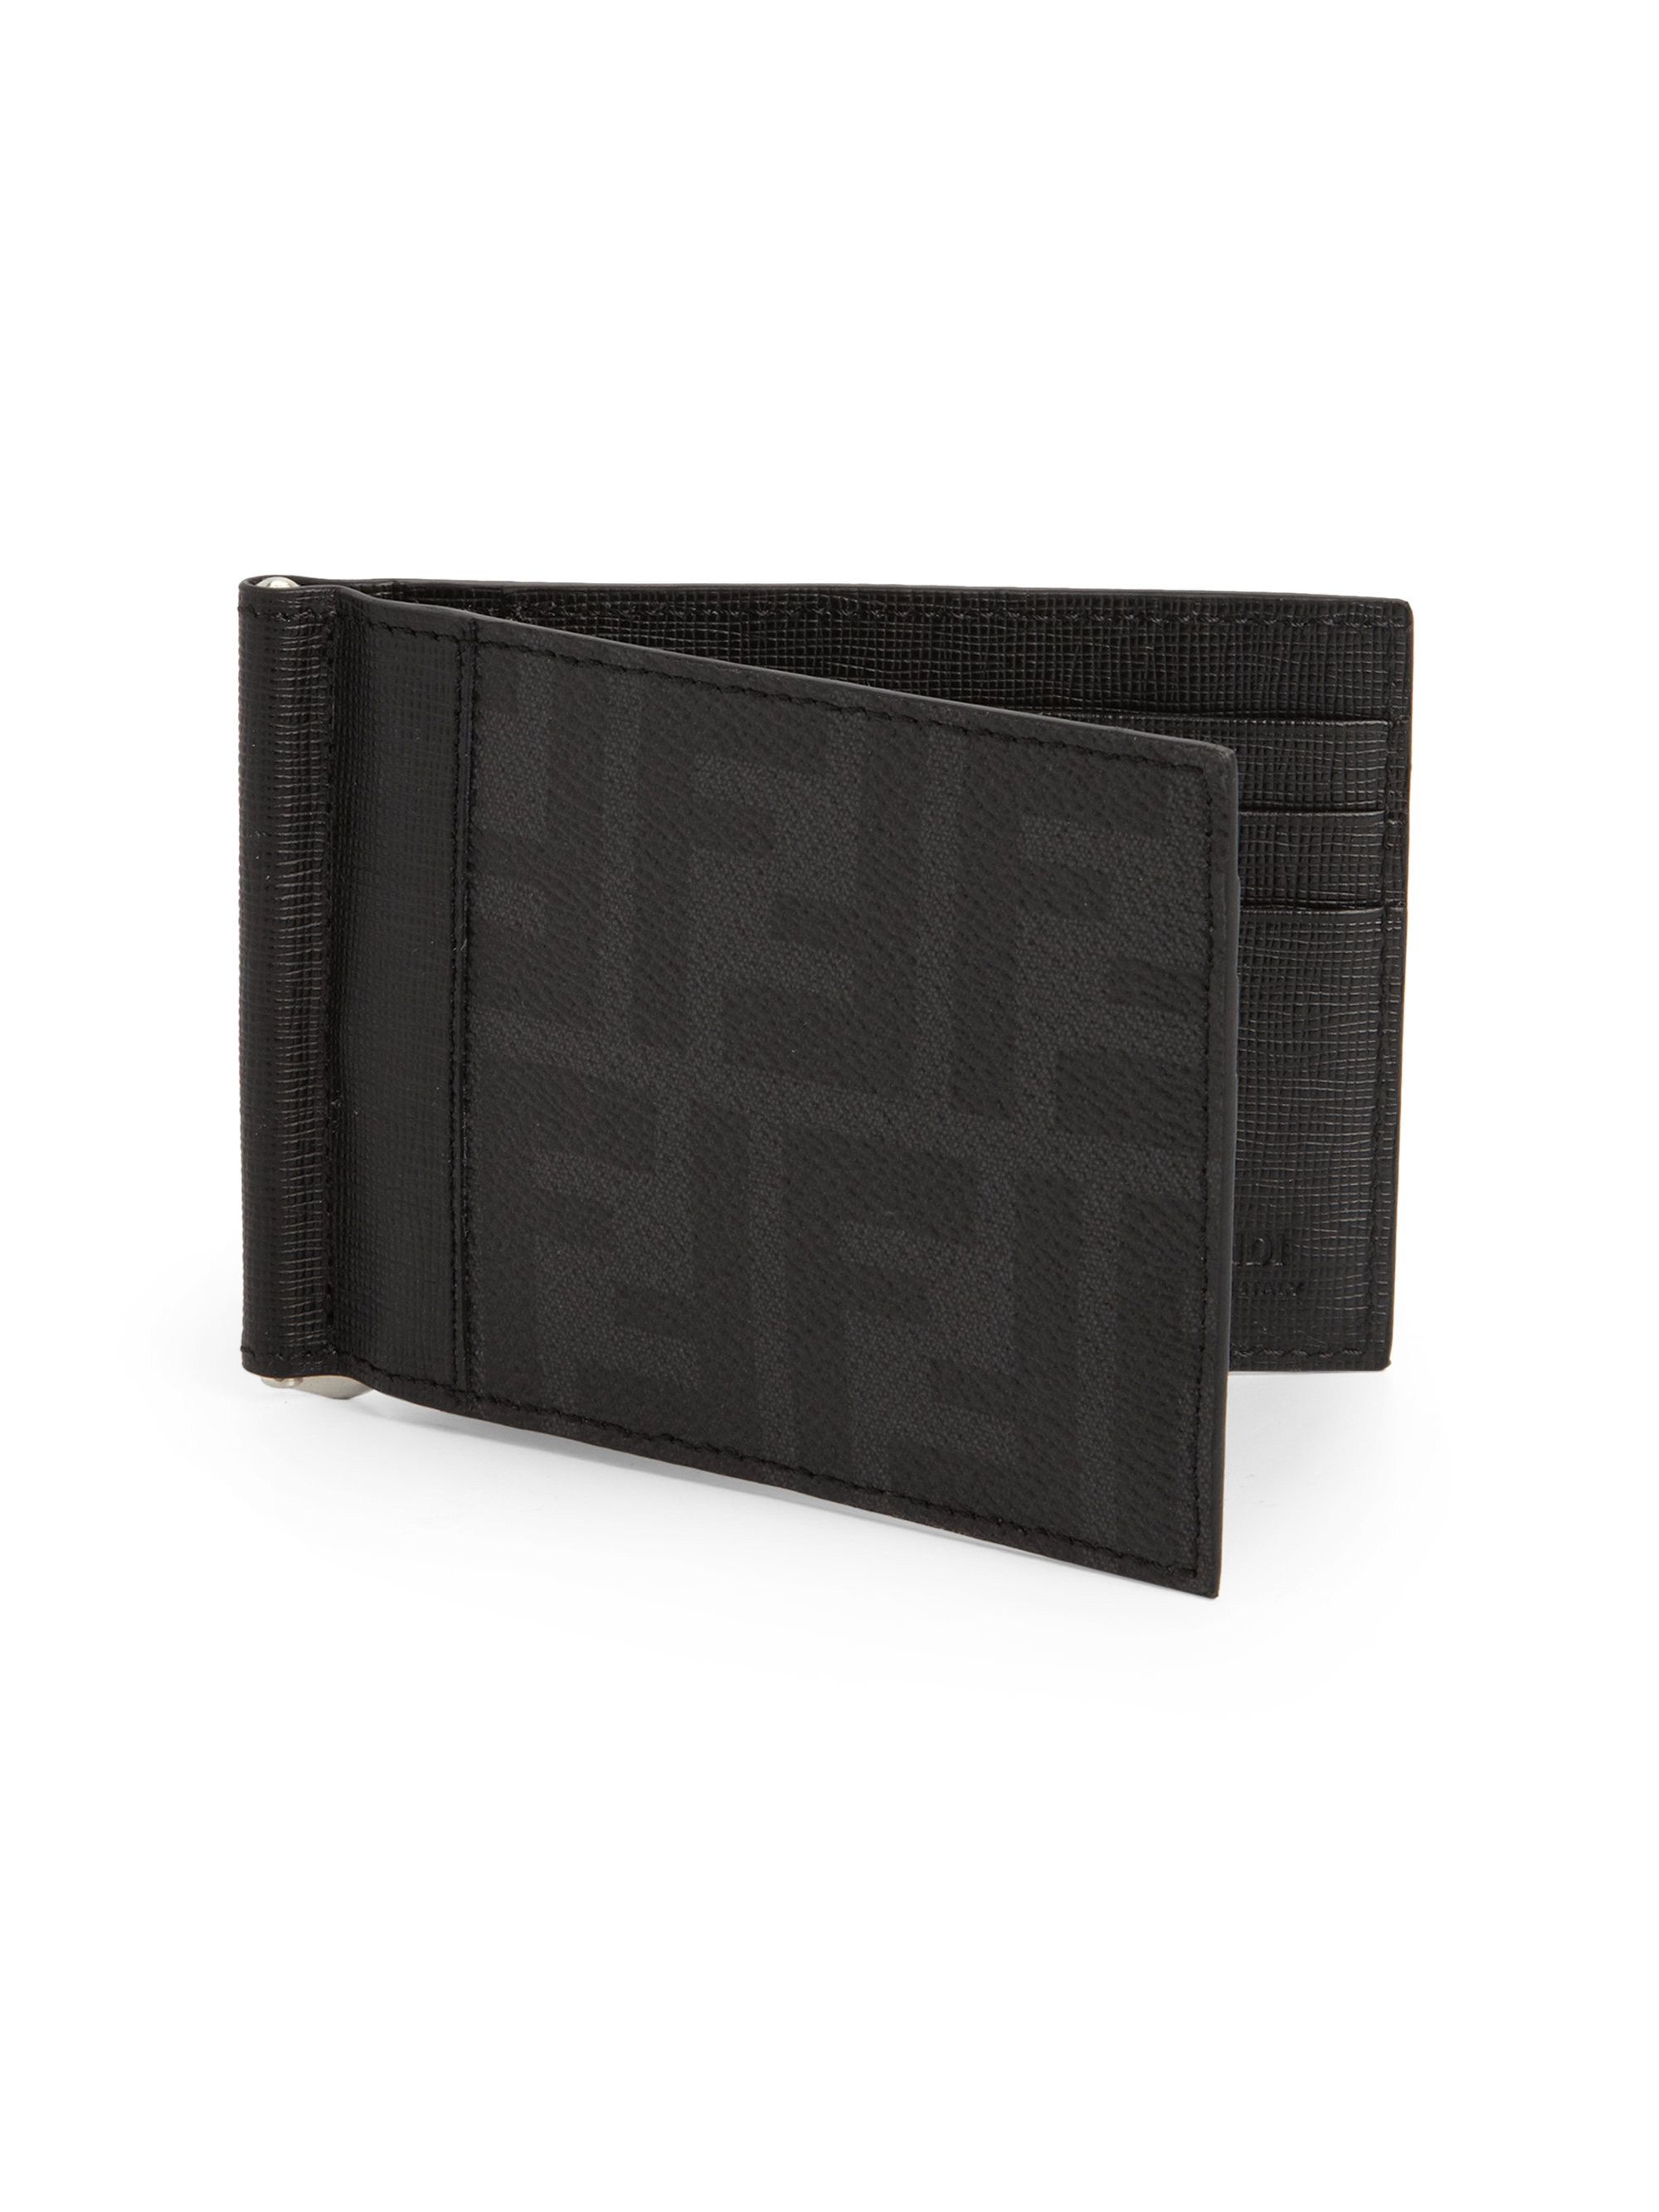 Fendi Men's Leather Wallet | vlr.eng.br